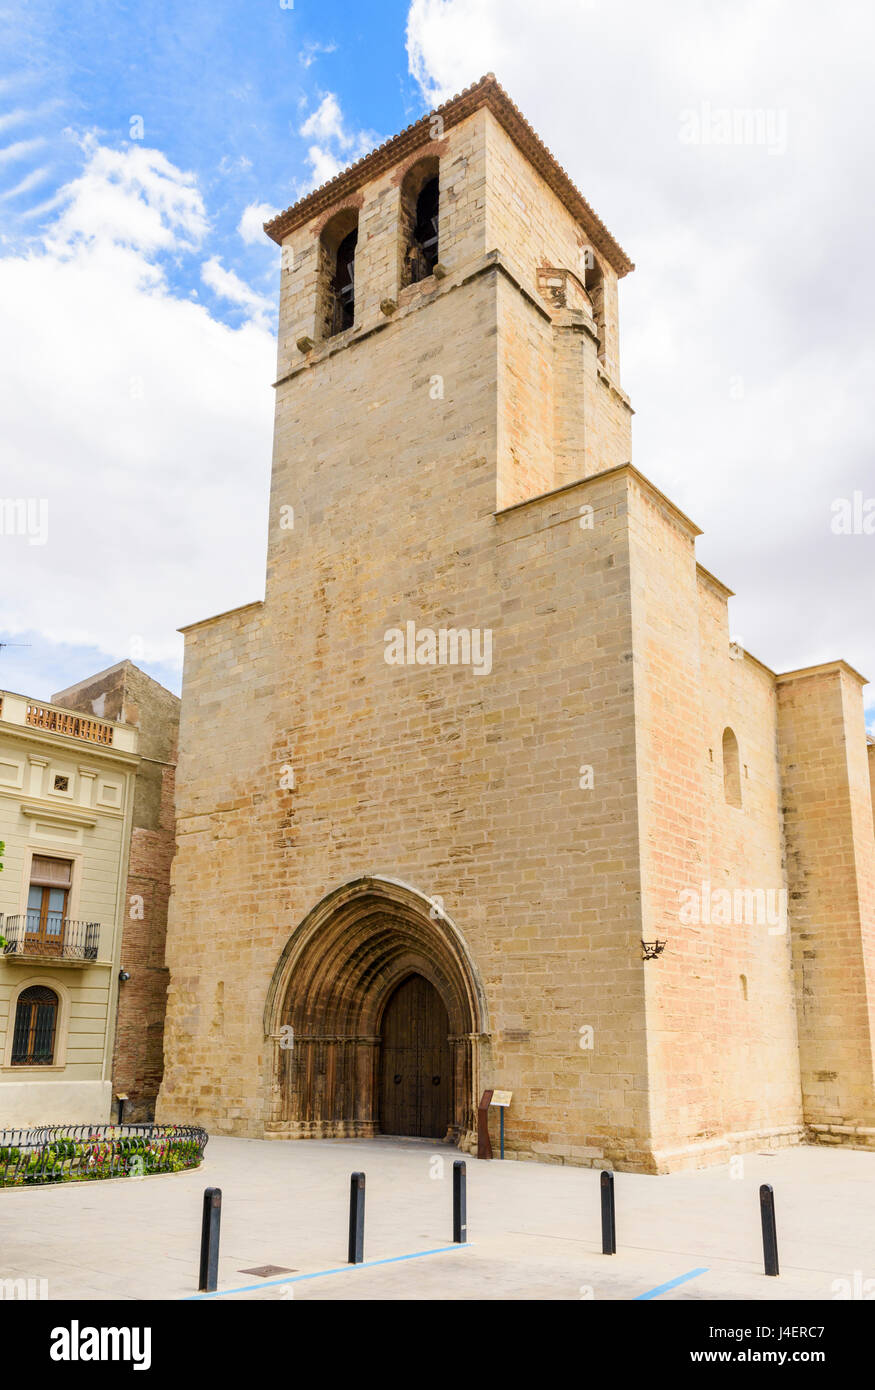 Bell tower facade of the Gothic Esglesia Vella de Sant Miquel, Placa de l’Esglesia, L'Espluga de Francoli, Tarragona, Catalonia, Spain Stock Photo